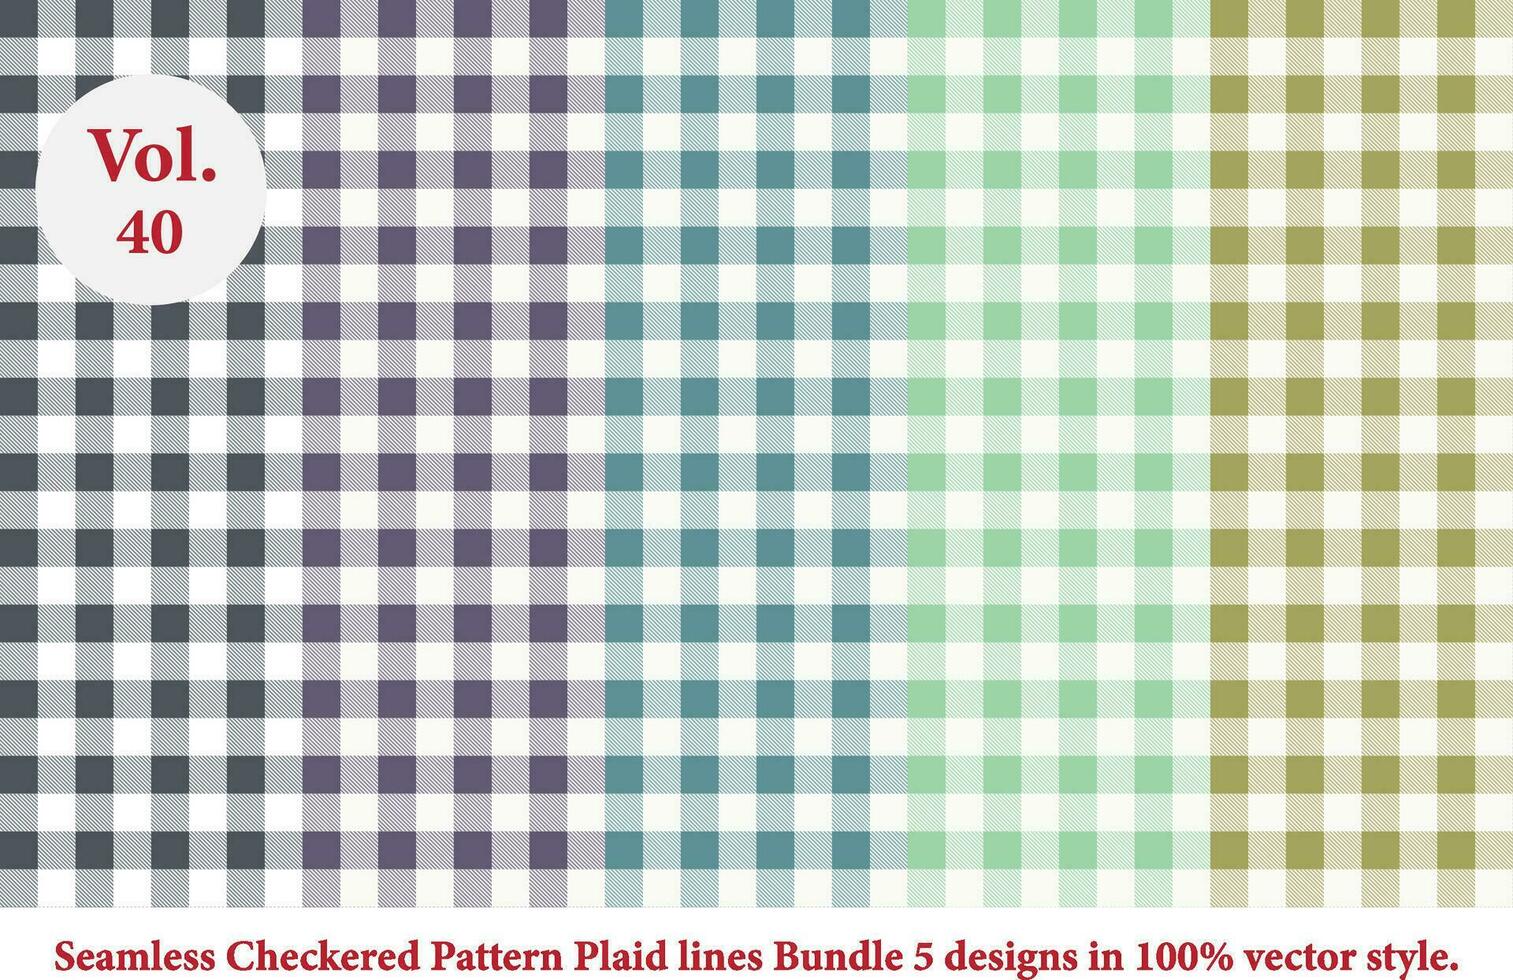 padrão de linhas xadrez, padrão quadriculado, vetor argyle, padrão tartan em vetor de estilo retrô